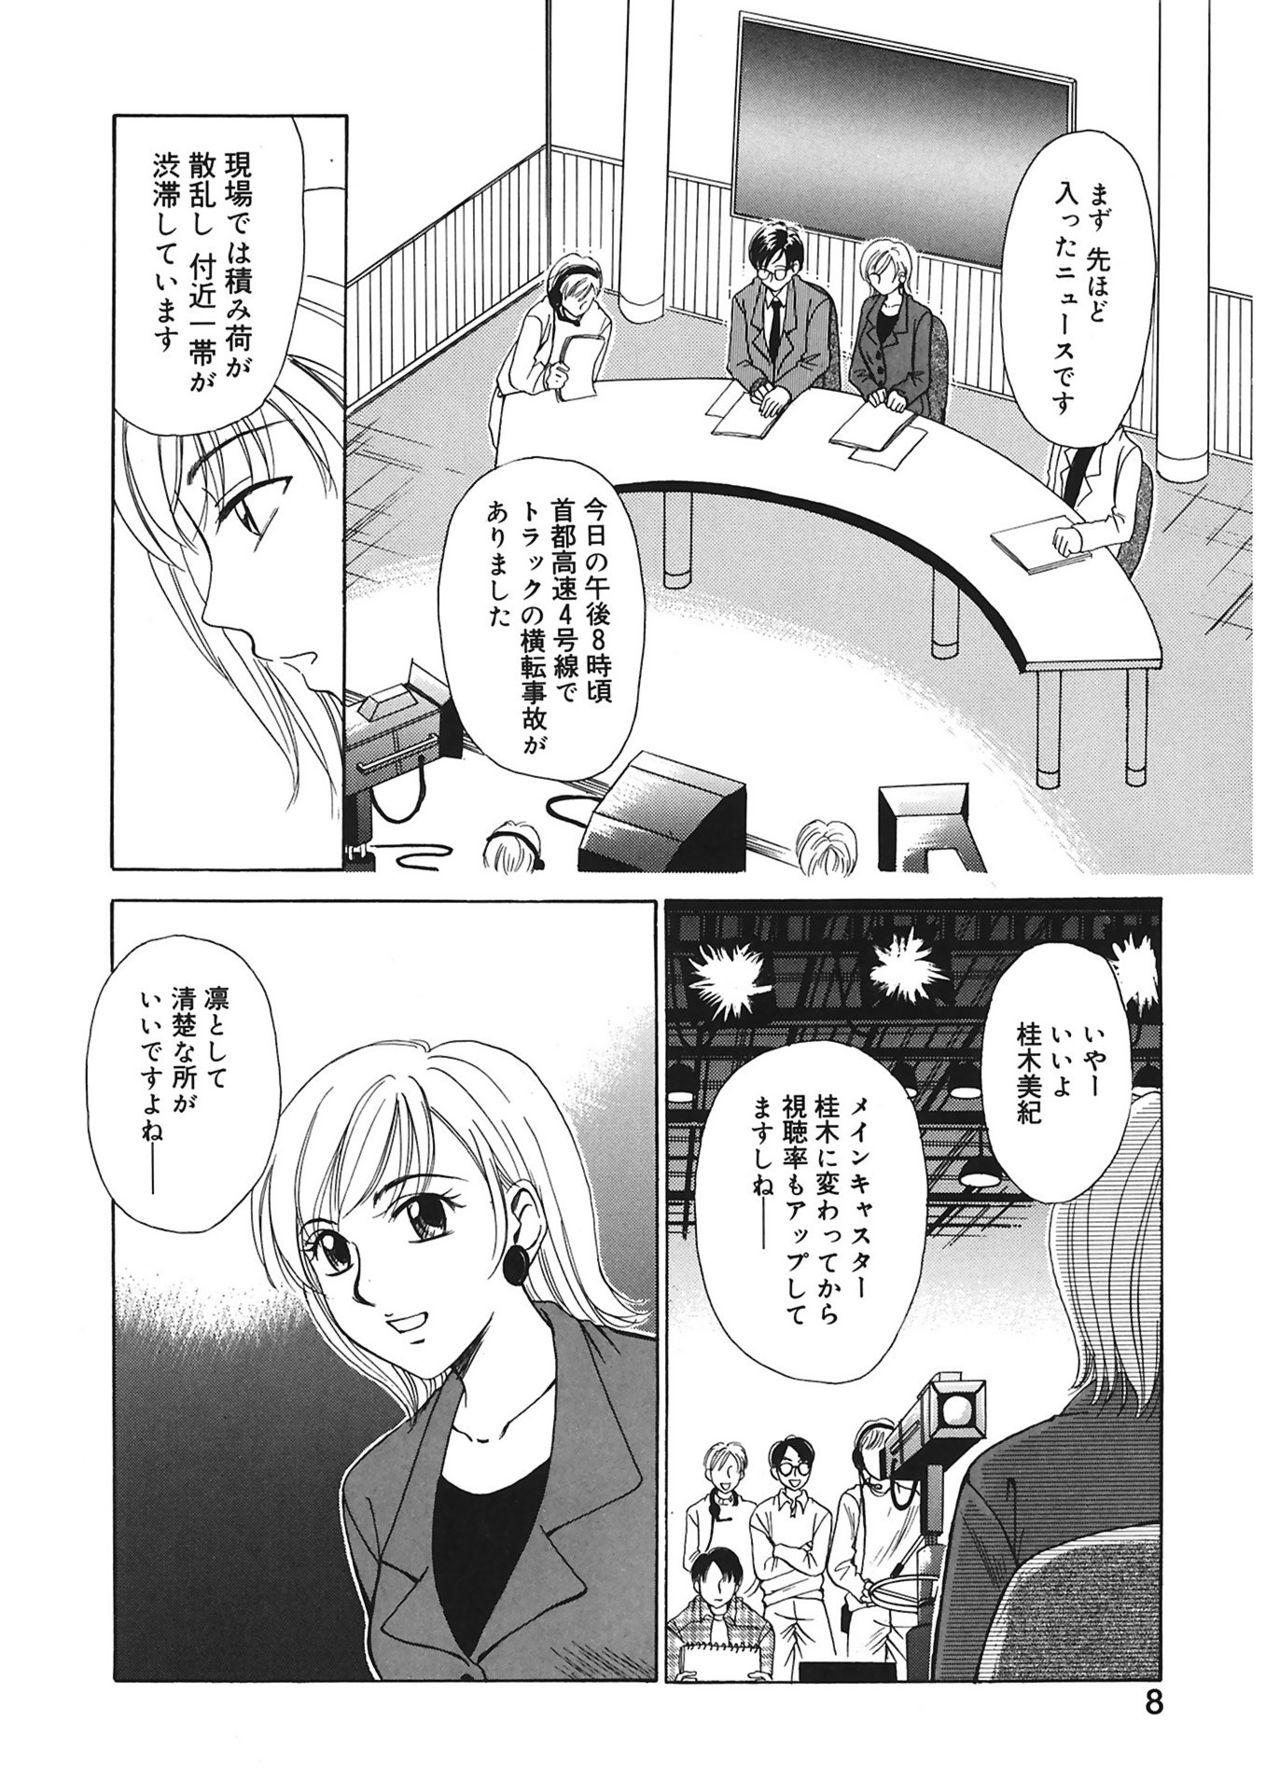 Monstercock [Gotoh Akira] 21 Ji no Onna ~Newscaster Katsuki Miki~ 1 [Digital] Girlfriends - Page 8